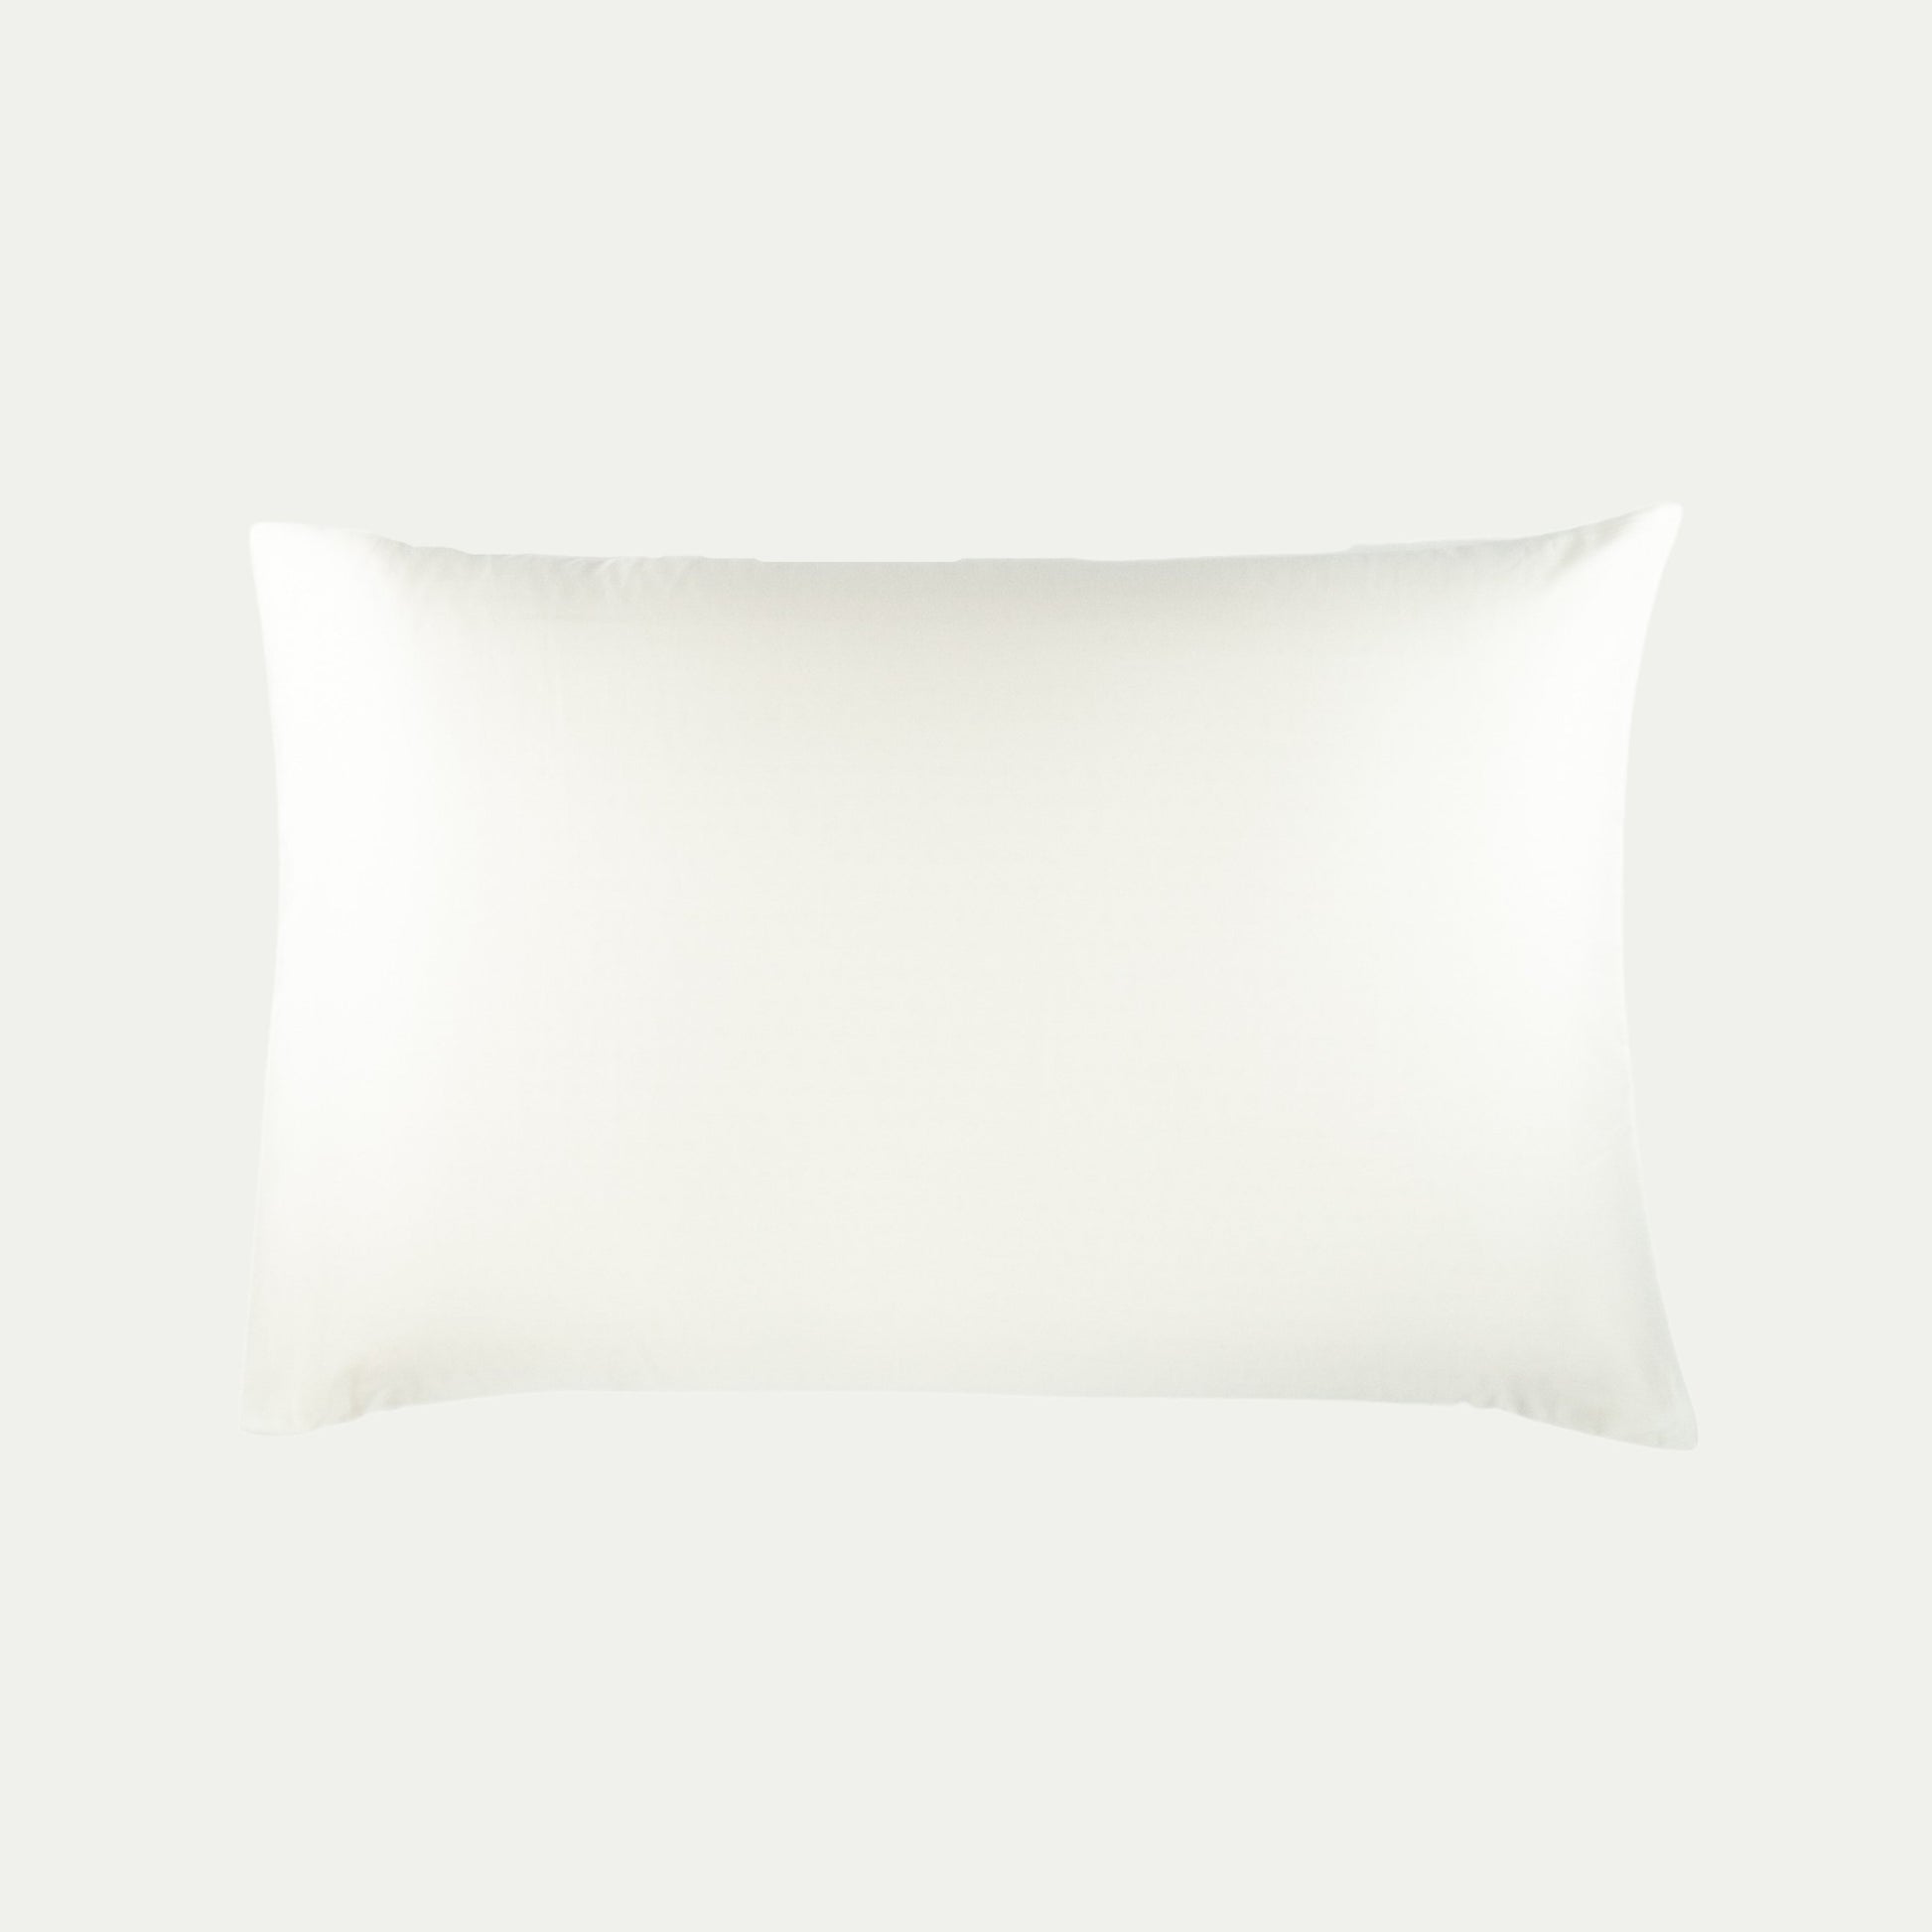 Organic cotton pillowcase in warm white